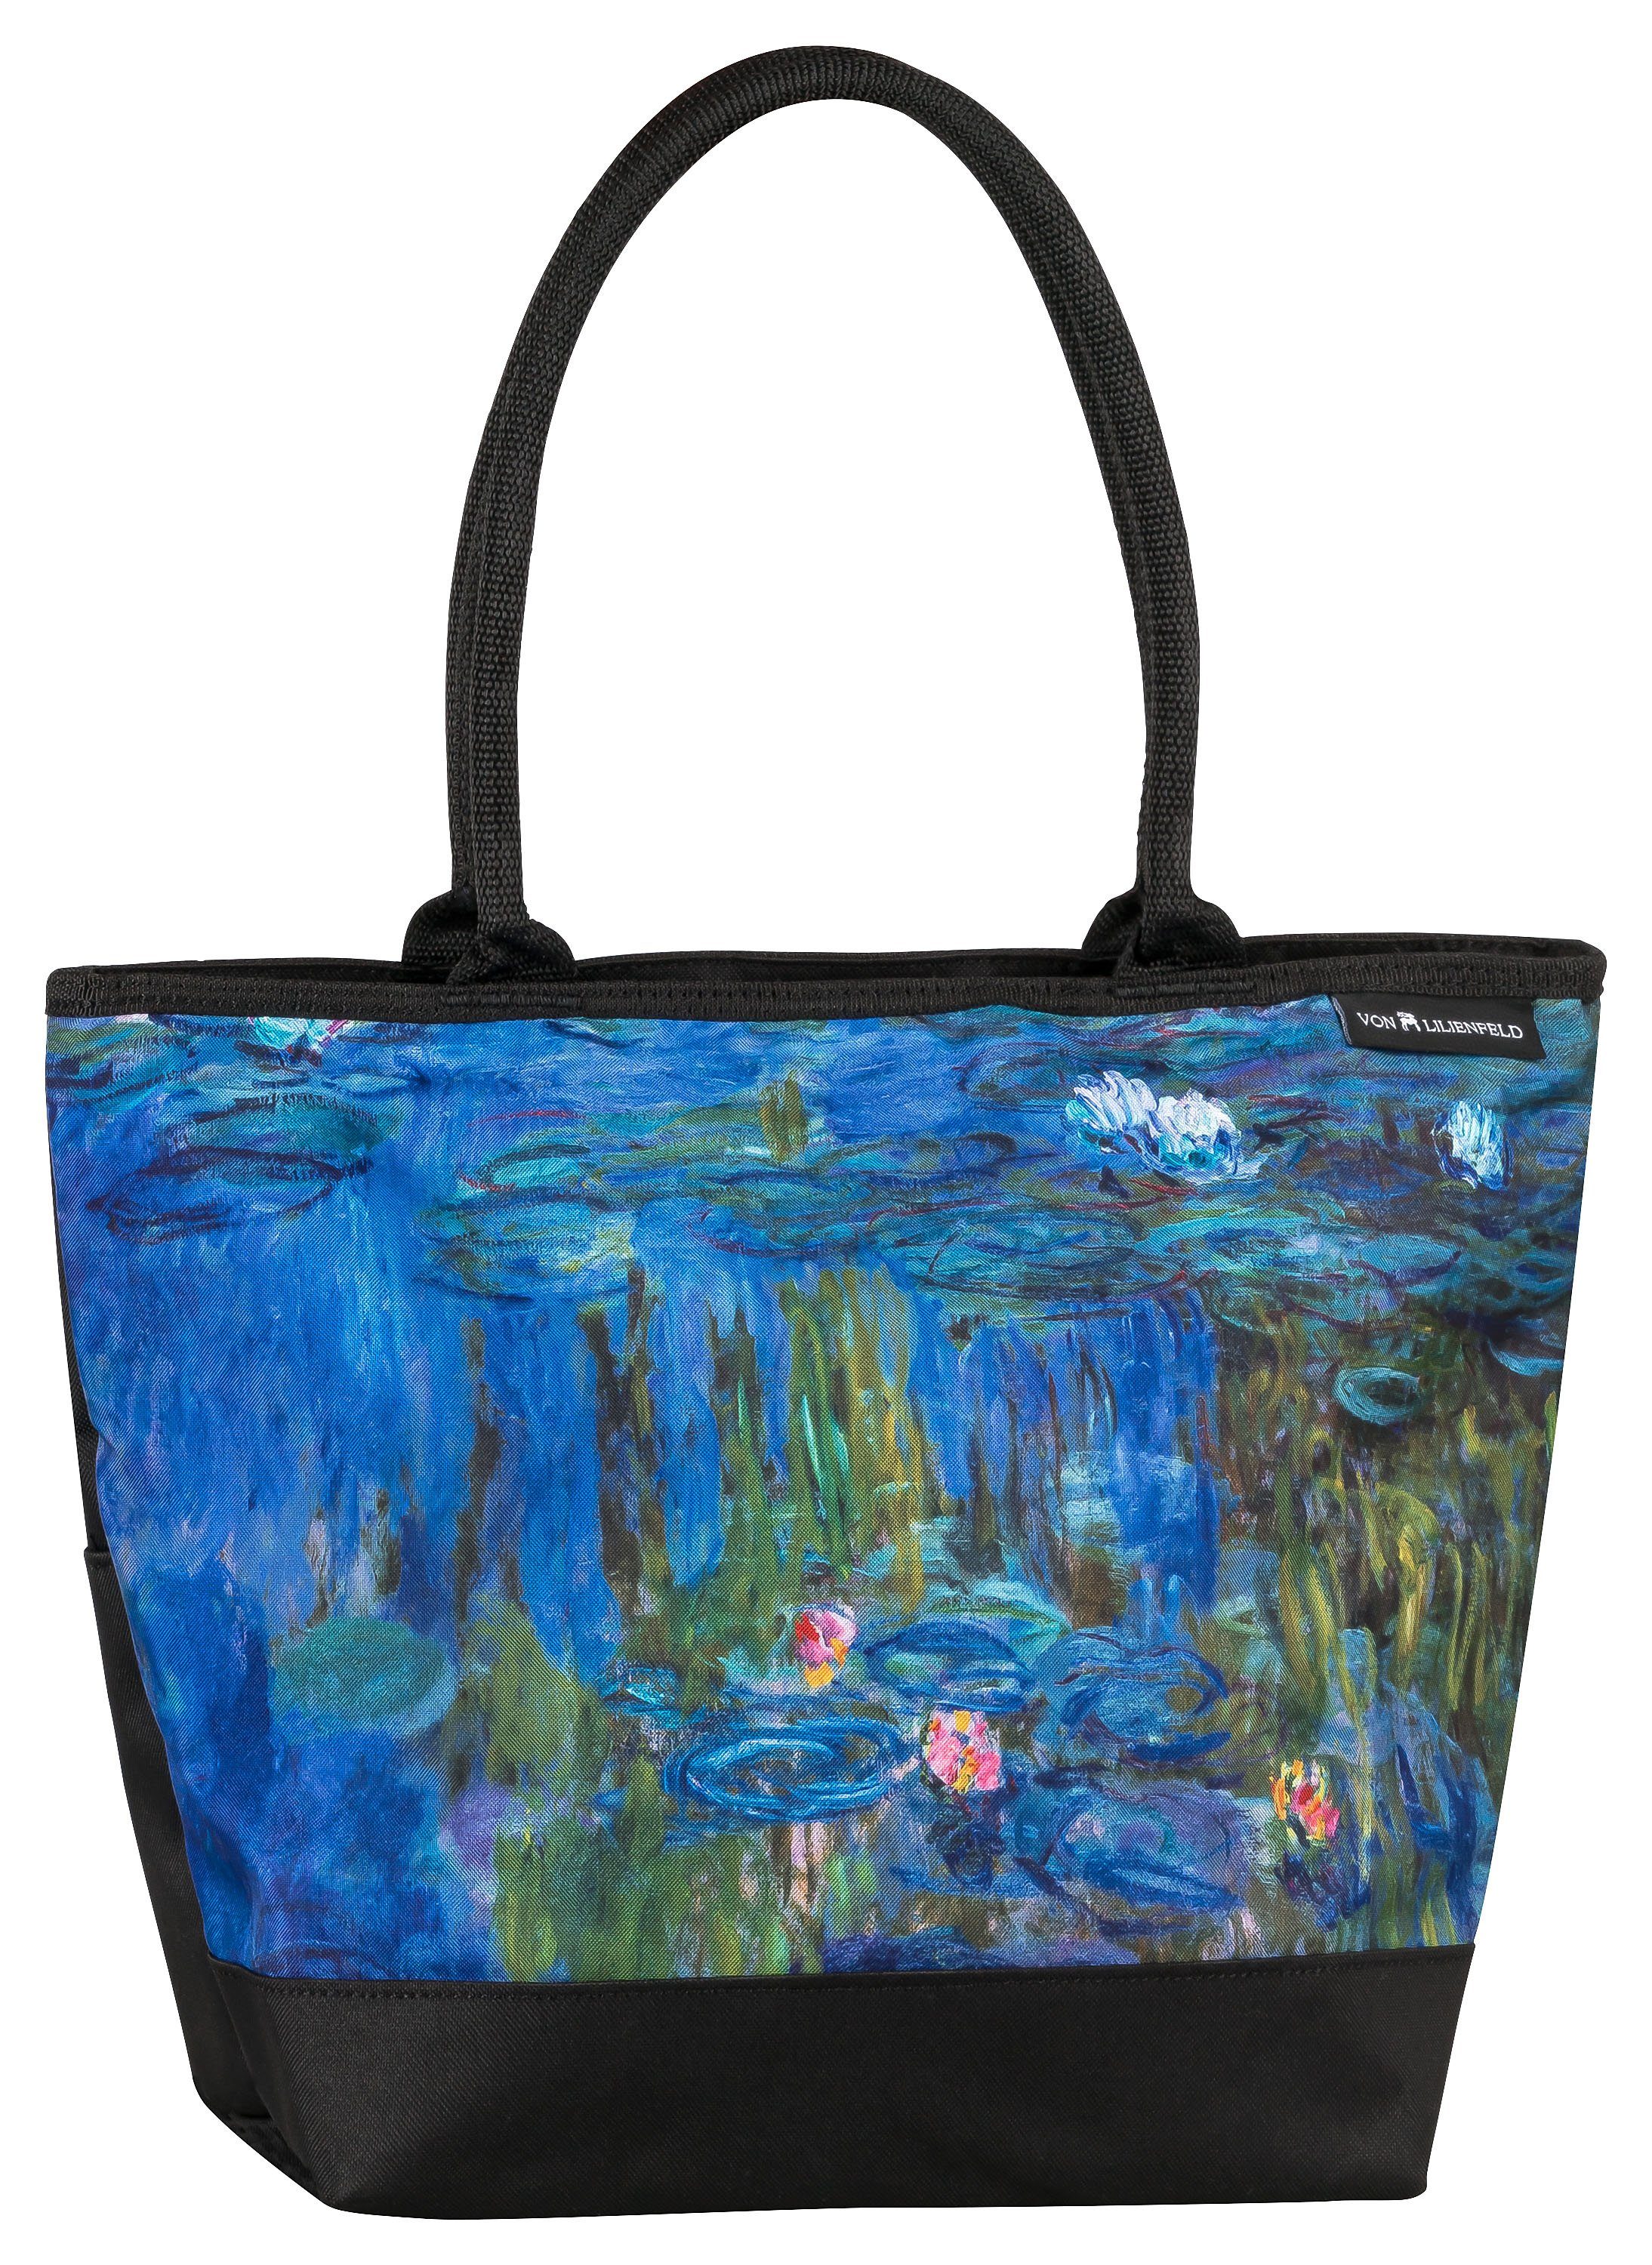 von Lilienfeld Handtasche Tasche Shopper, Kunstdruck Seerosen Motiv Claude mit der Monet auf Vorderseite